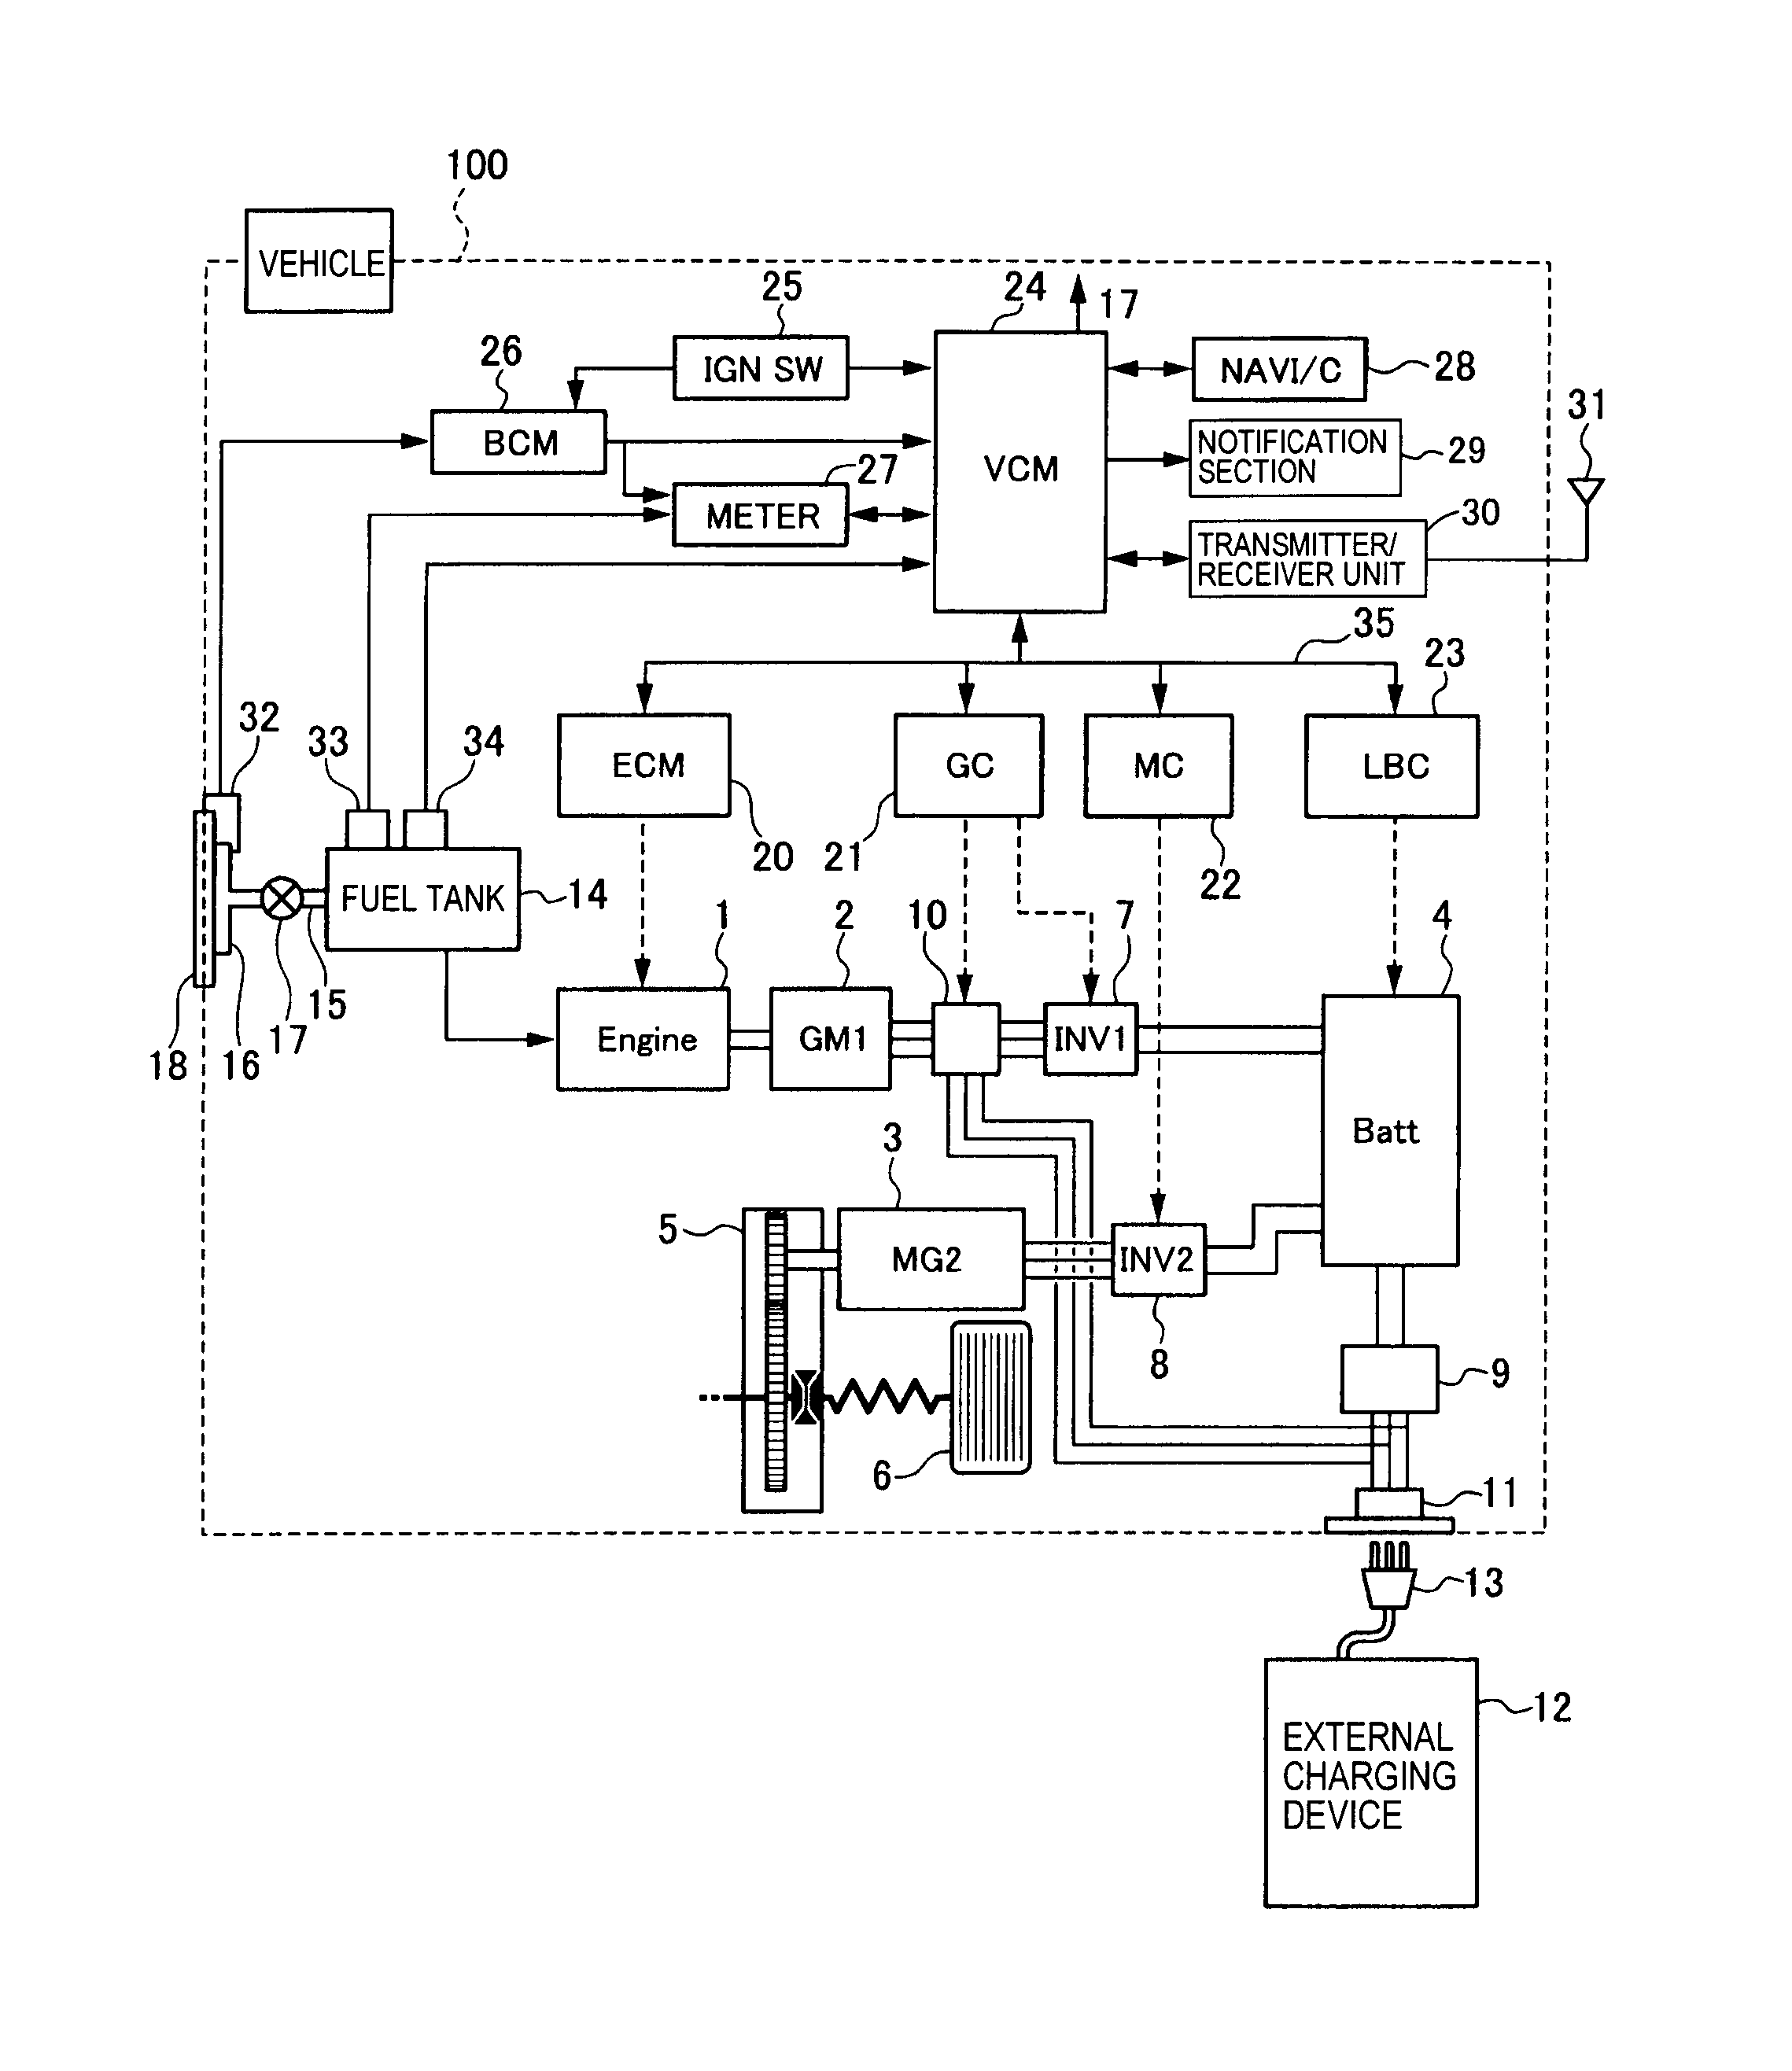 wiring diagram for reese brake controller